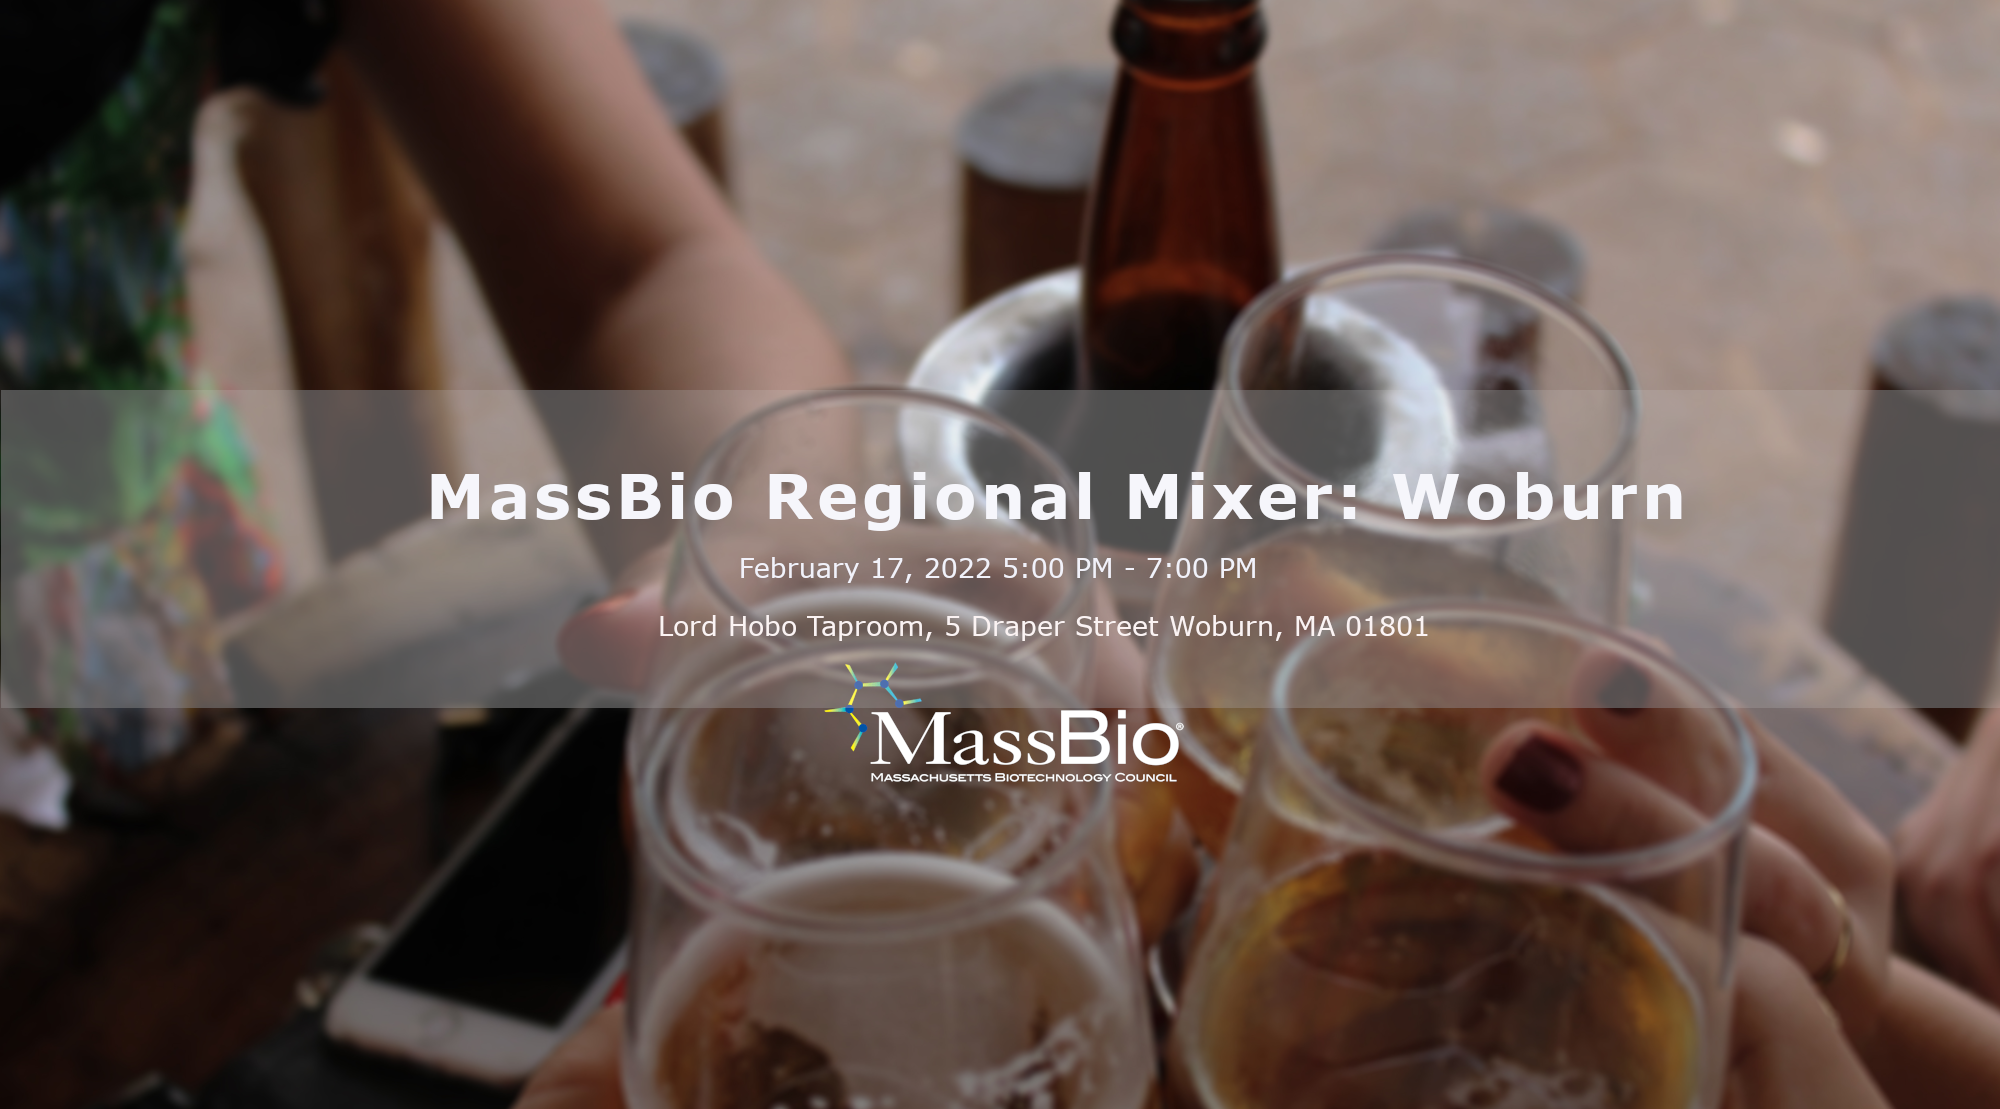 MassBio Regional Mixer: Woburn